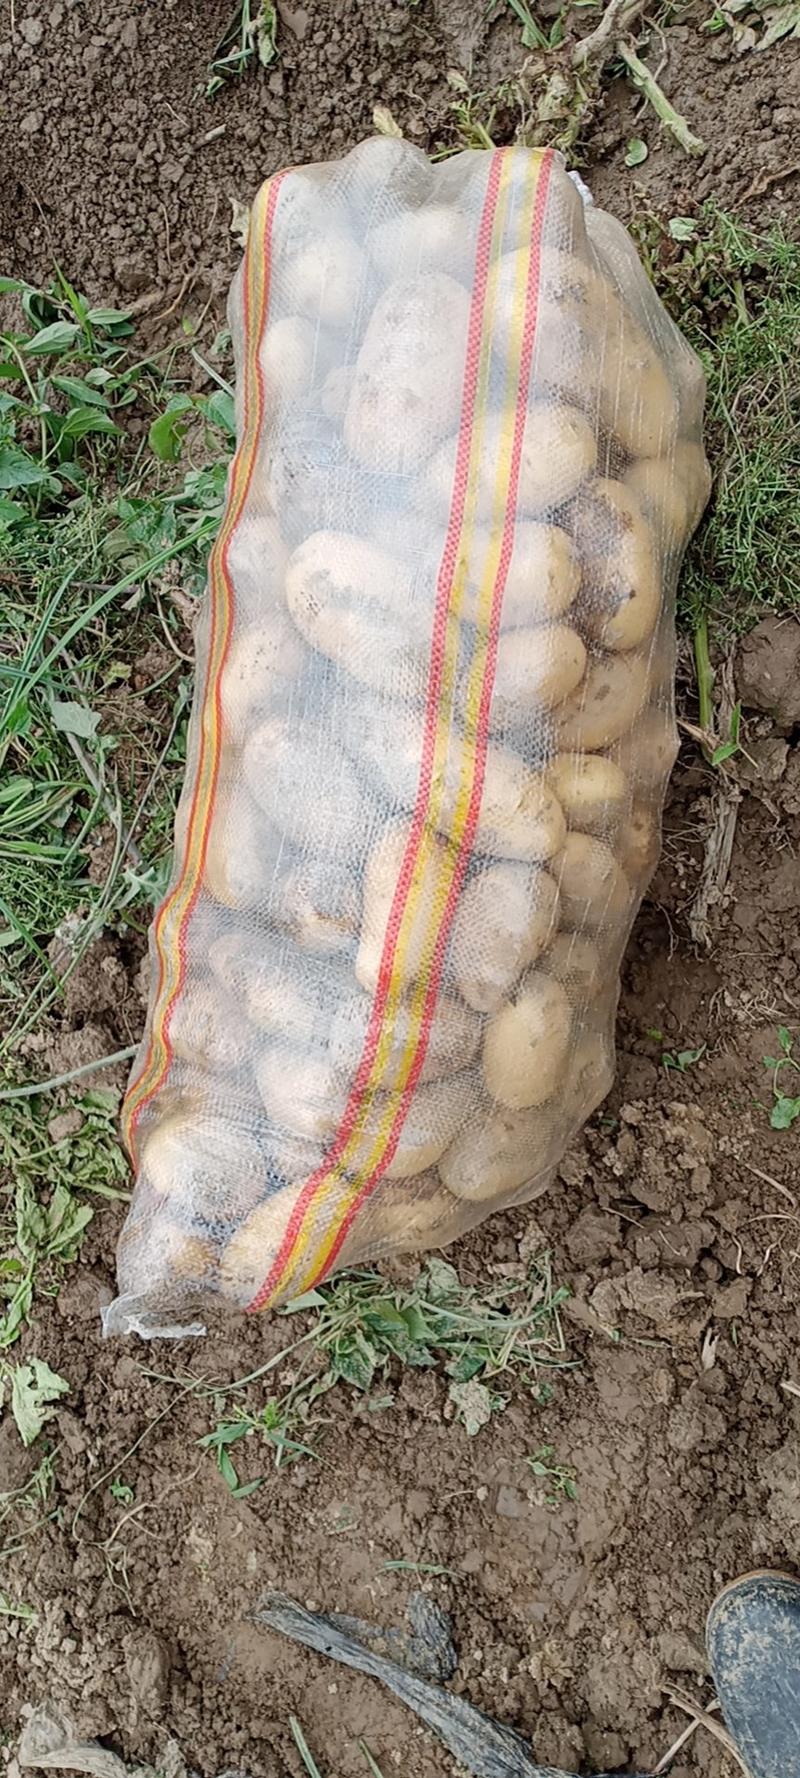 大丰12土豆黄皮黄心千亩基地持续供应全国发货